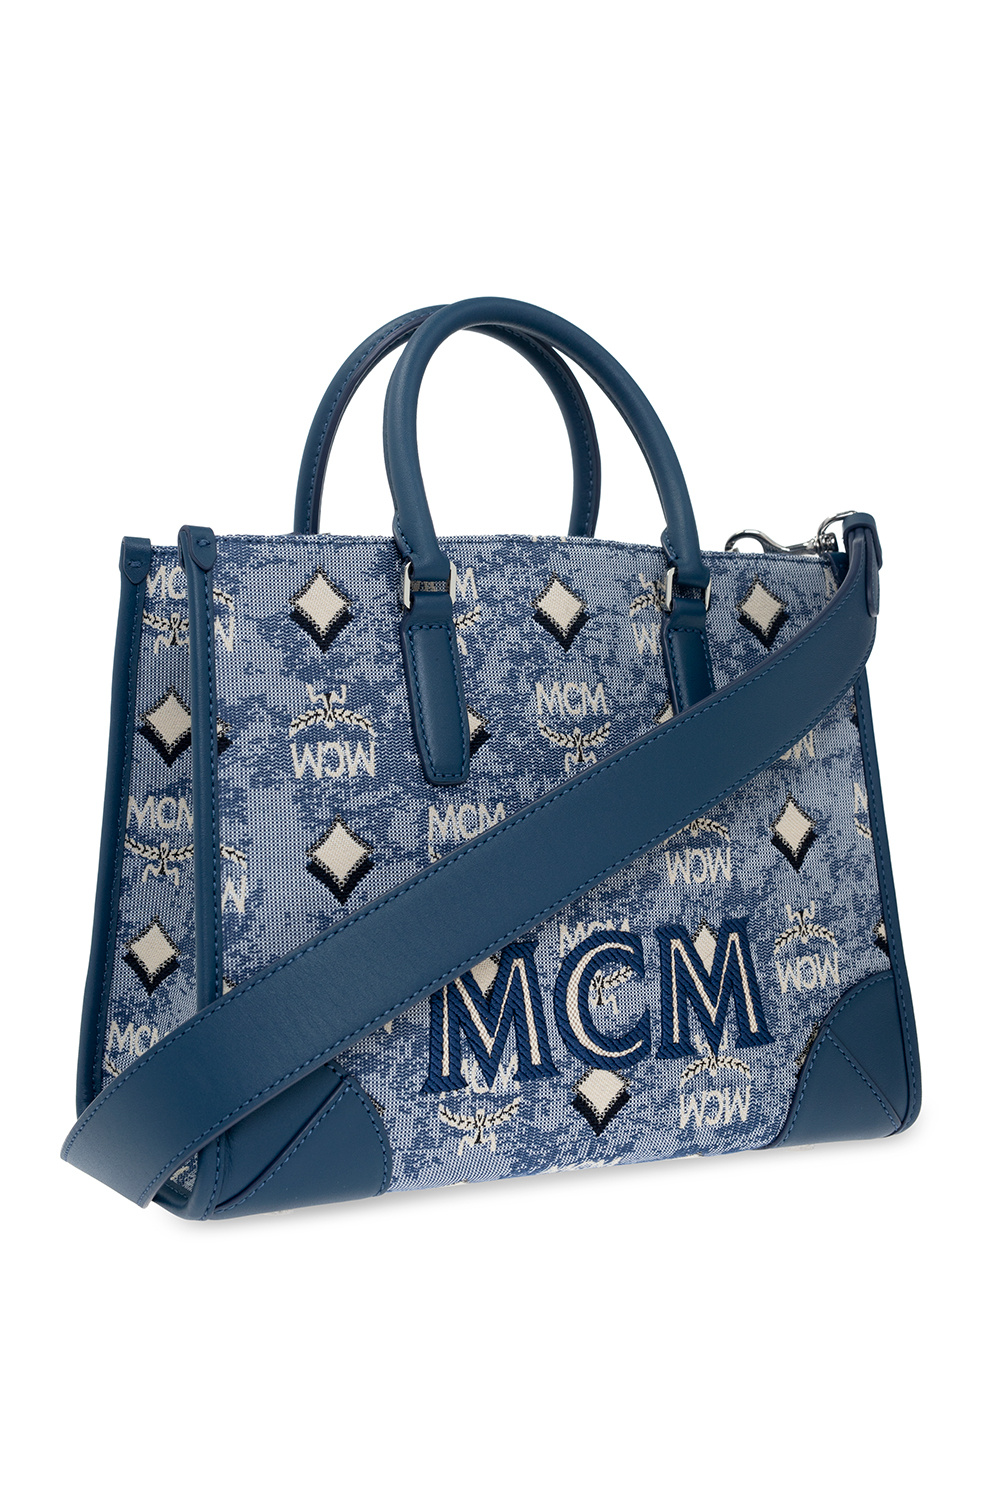 MCM Patterned travel bag